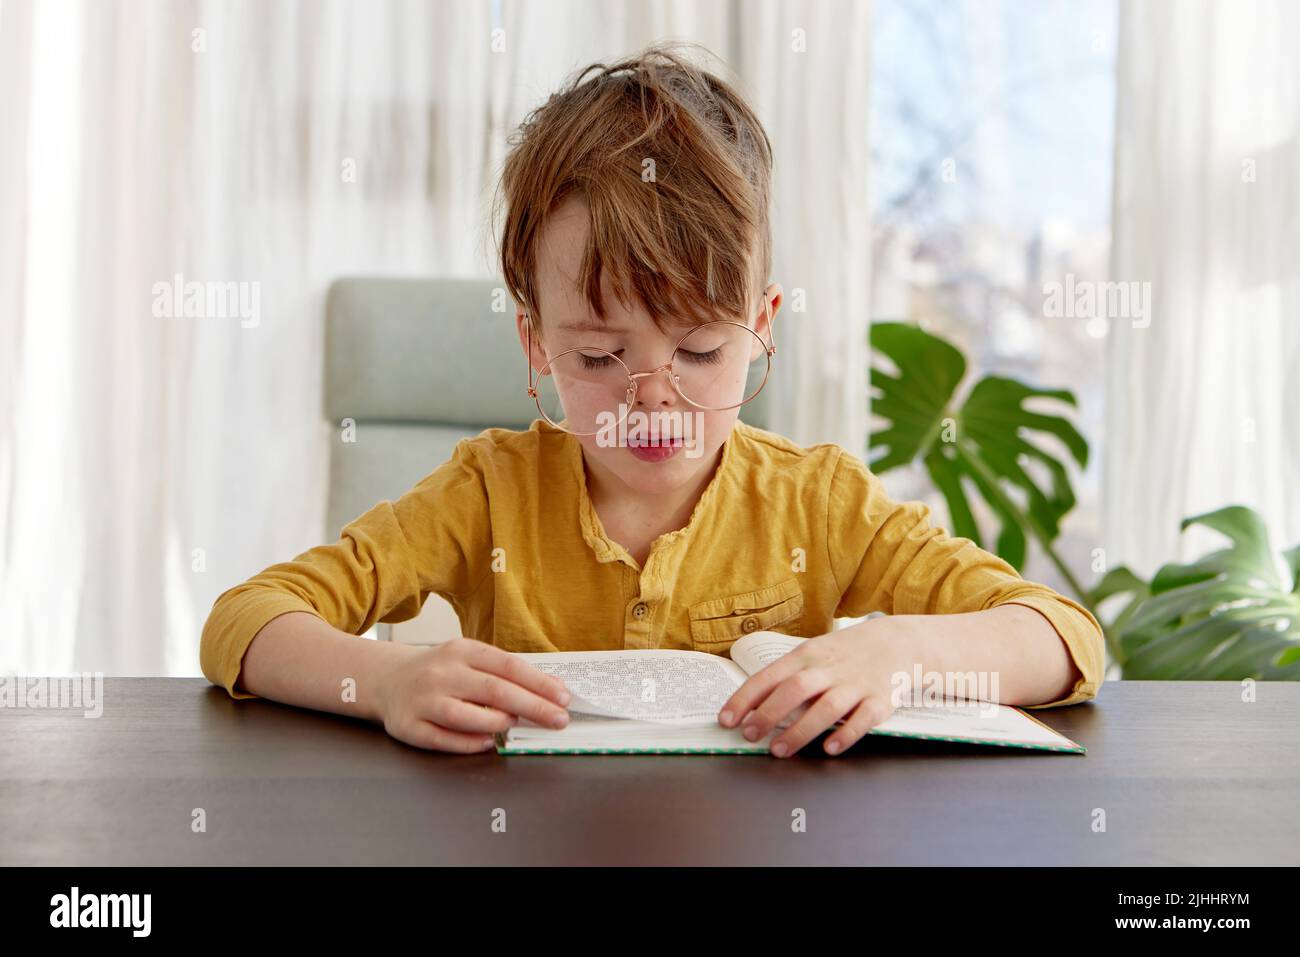 Niño sentado en la silla leyendo un libro, usando gafas Foto de stock